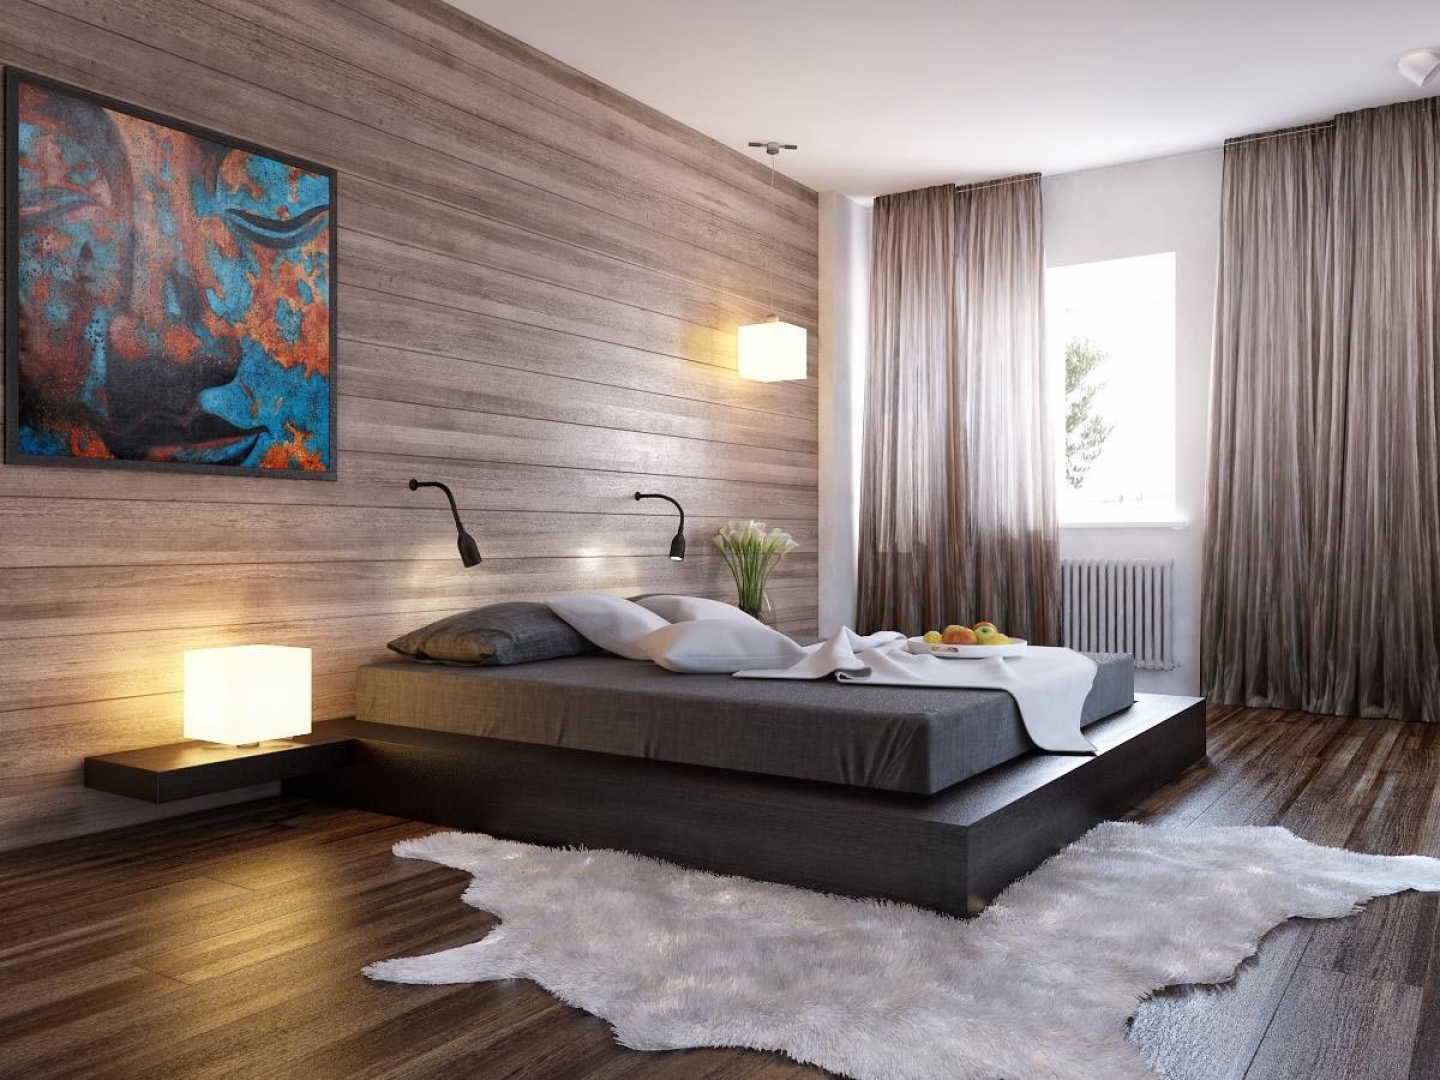 Отделка стен деревянными панелями делает спальню модерновой и стильной